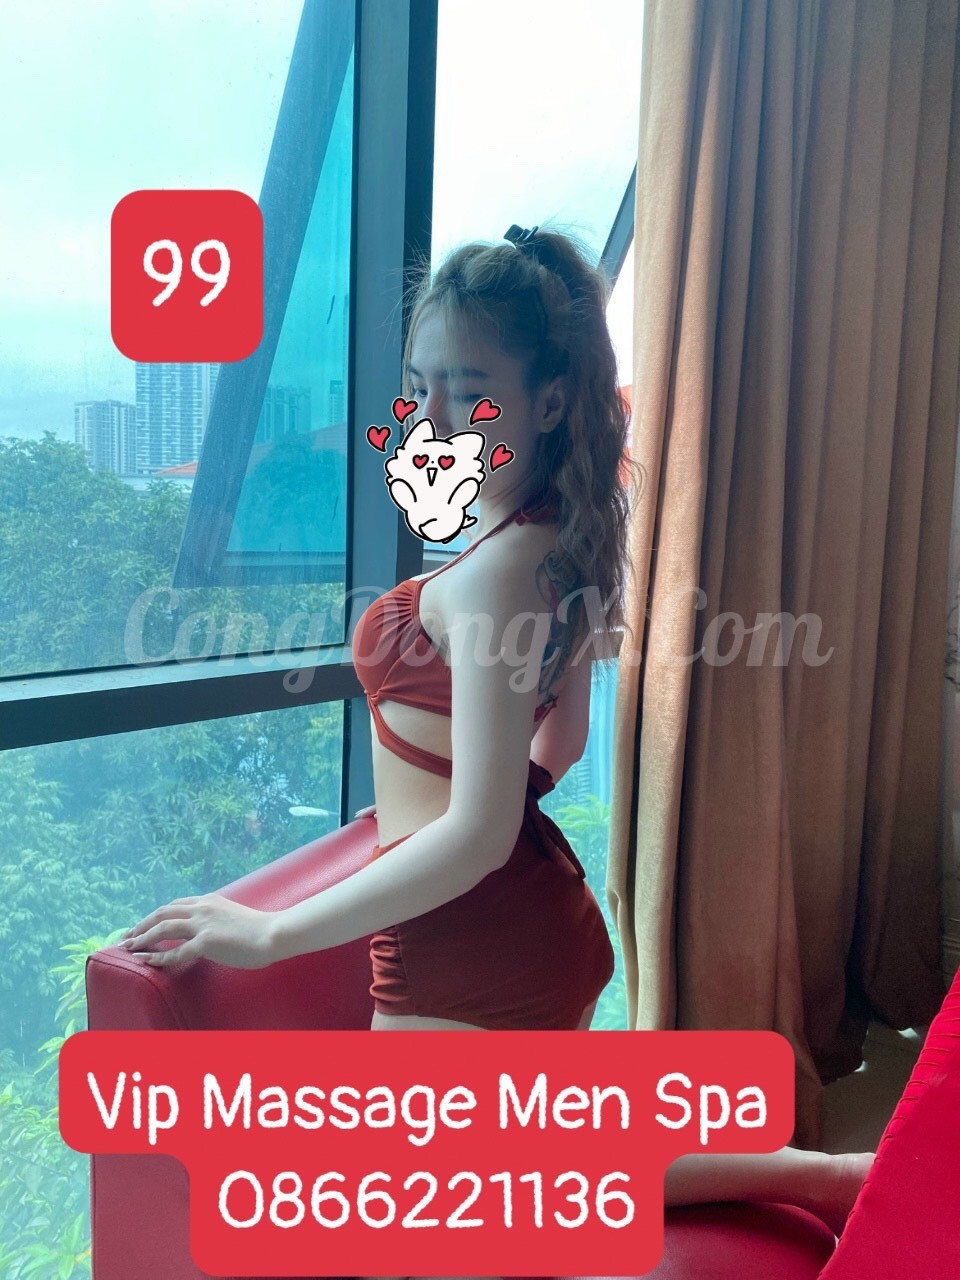 vip massage men spa số 9 thiên hiền mỹ đình 1